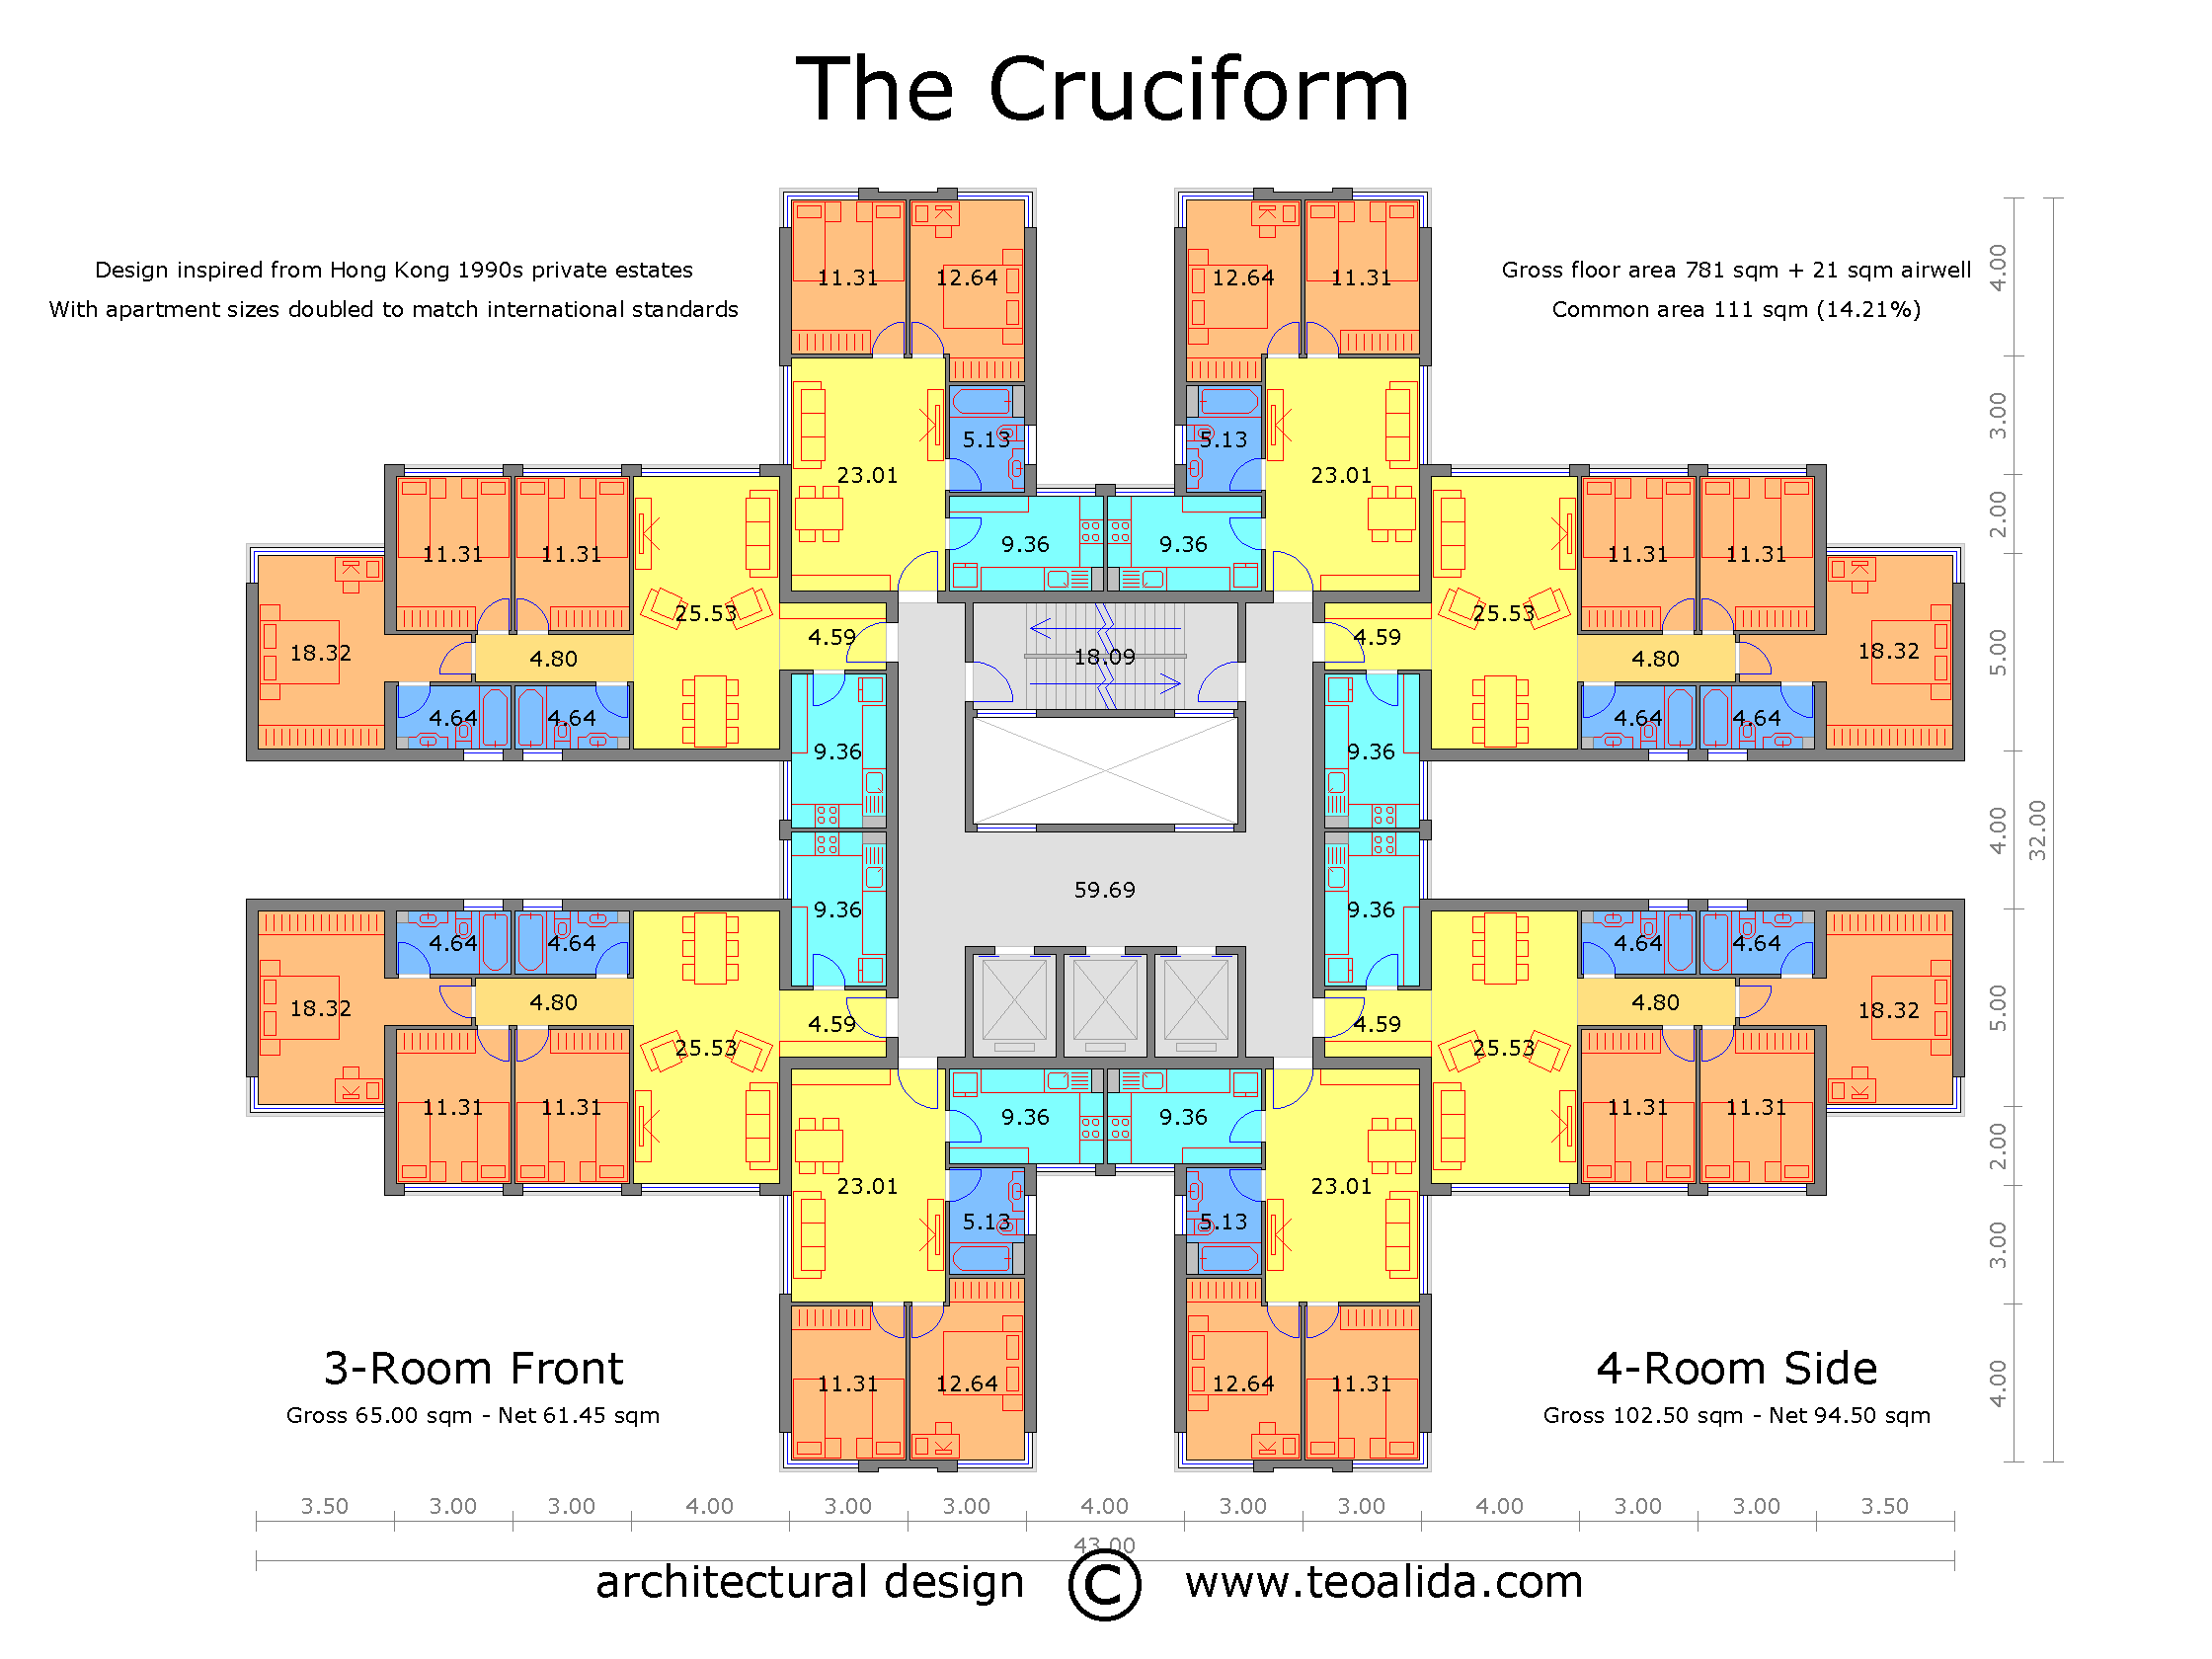 The Cruciform floor plan